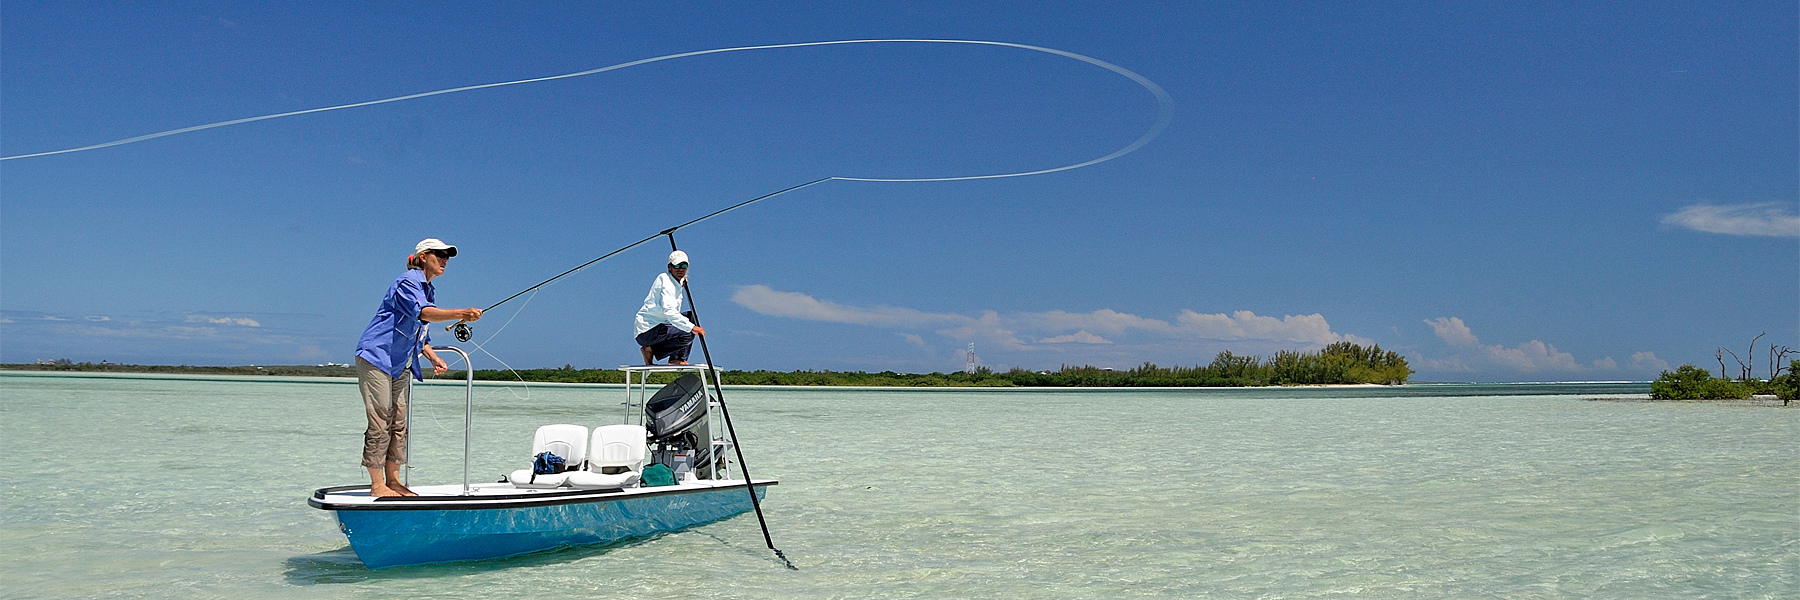 bahamas flats fishing license